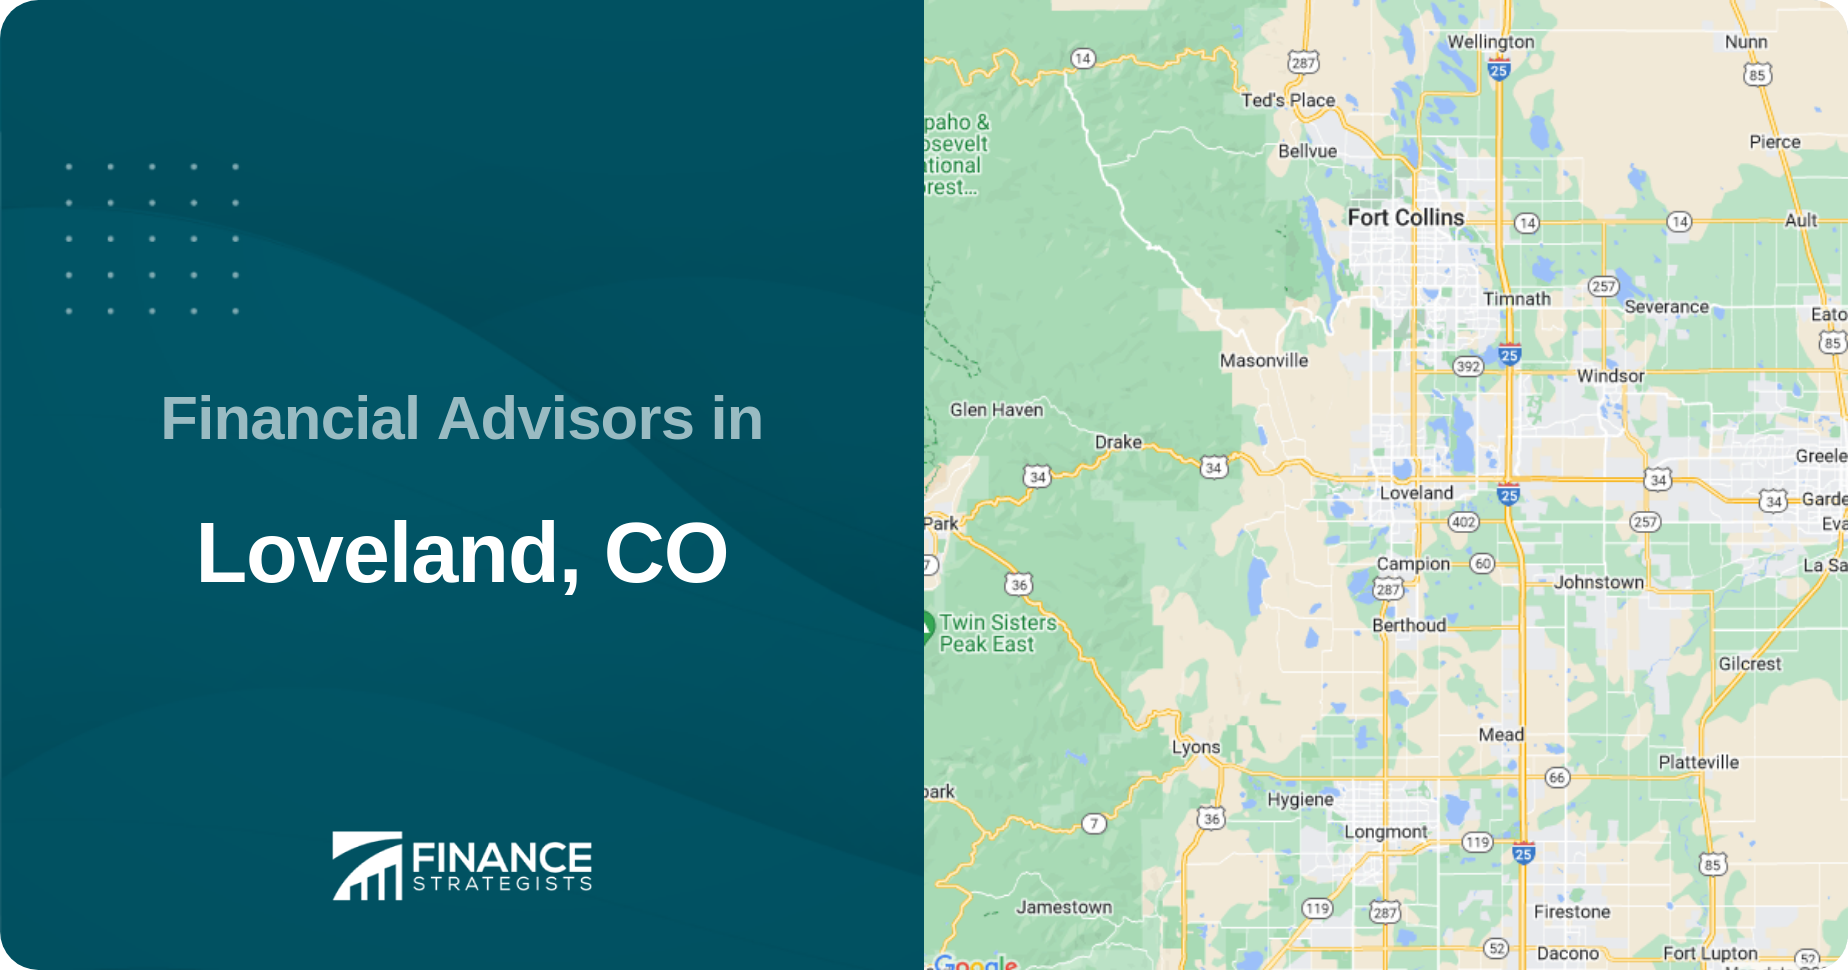 Financial Advisors in Loveland, CO